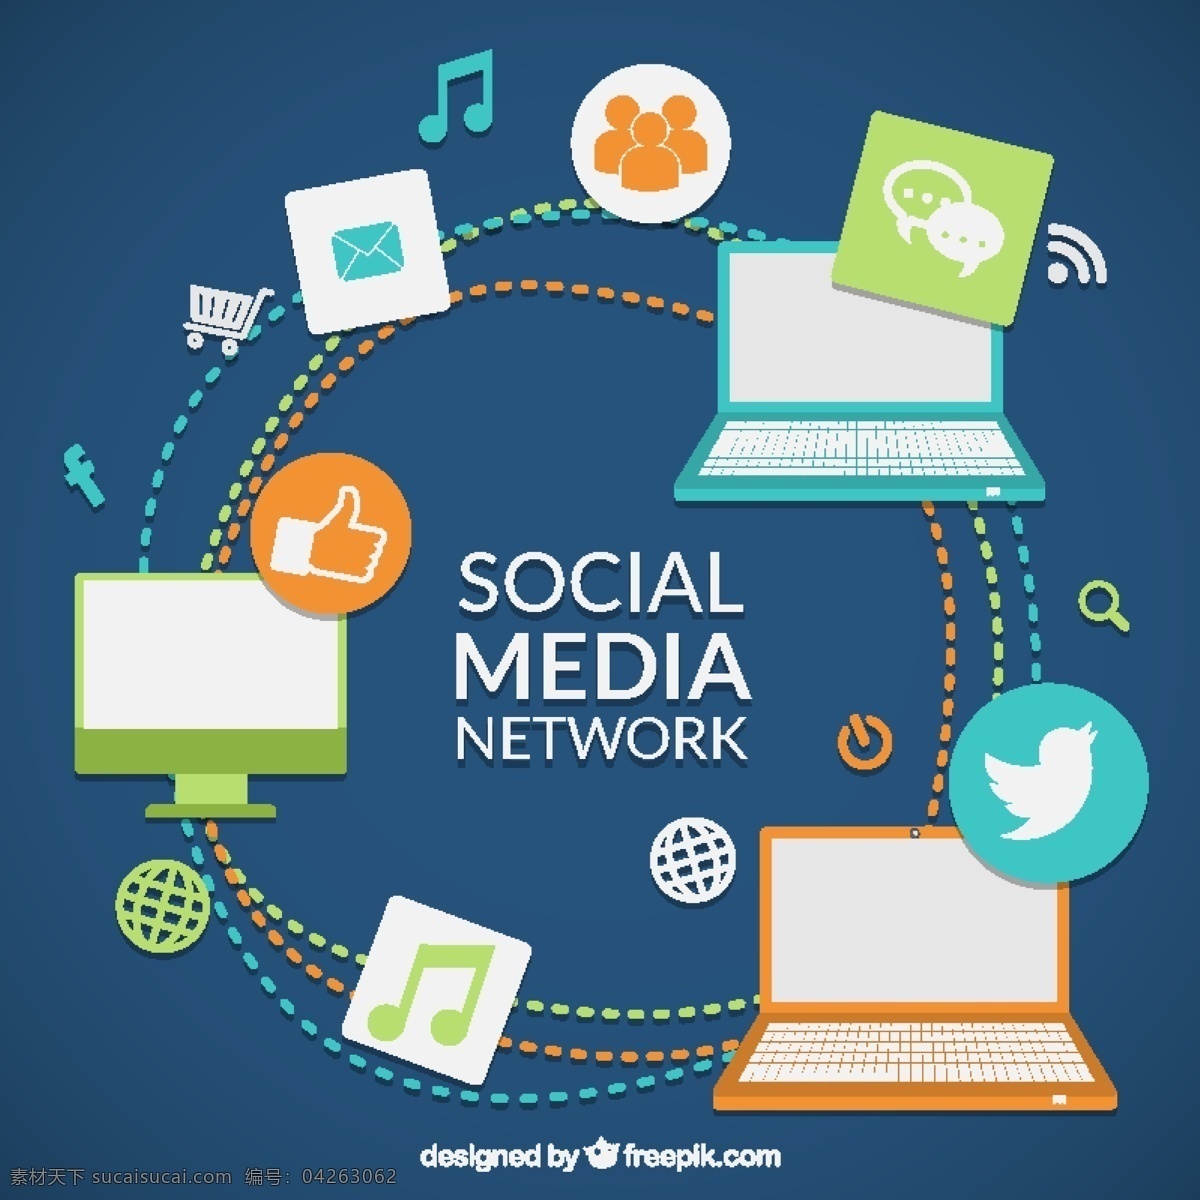 有色 社交 媒体 网 图表 图标 社交媒体 技术 社会 互联网 网络 社交媒体图标 图形 色彩 社会的图标 社会网络 网络媒体图标 颜色 蓝色